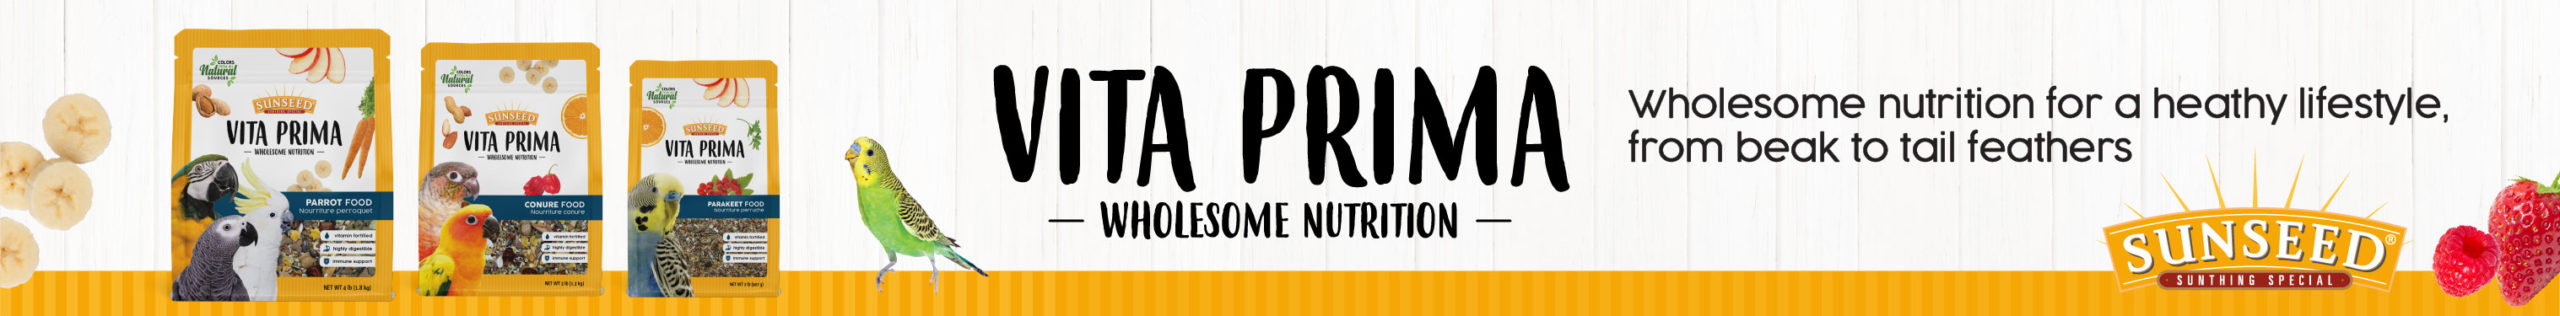 Vita Prima - Wholesome Nutrition